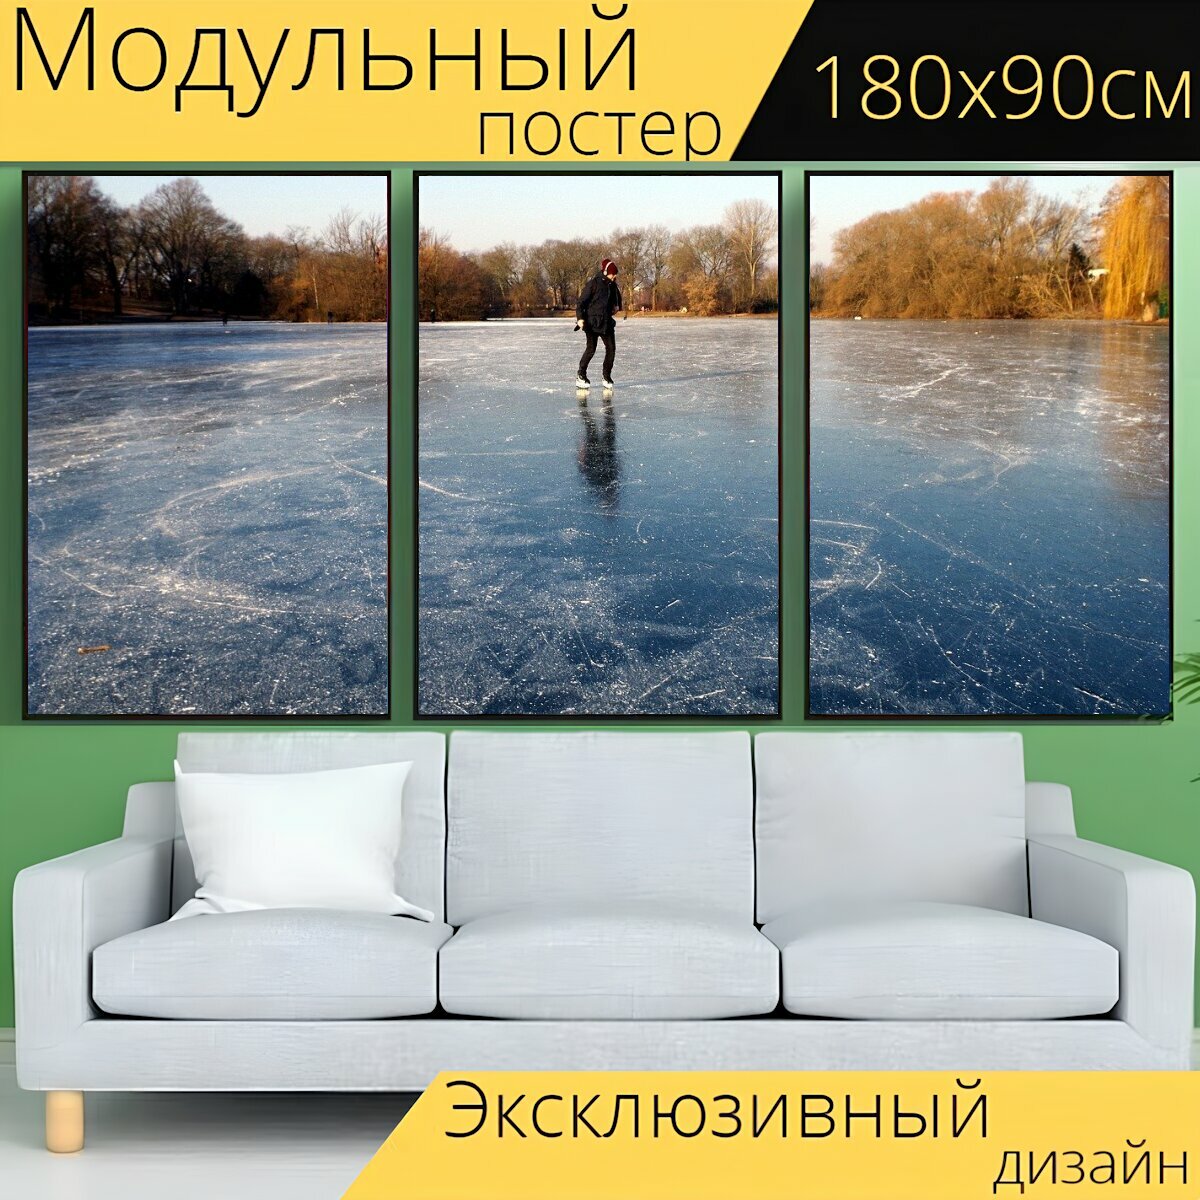 Модульный постер "Катание на коньках, коньки, озеро" 180 x 90 см. для интерьера